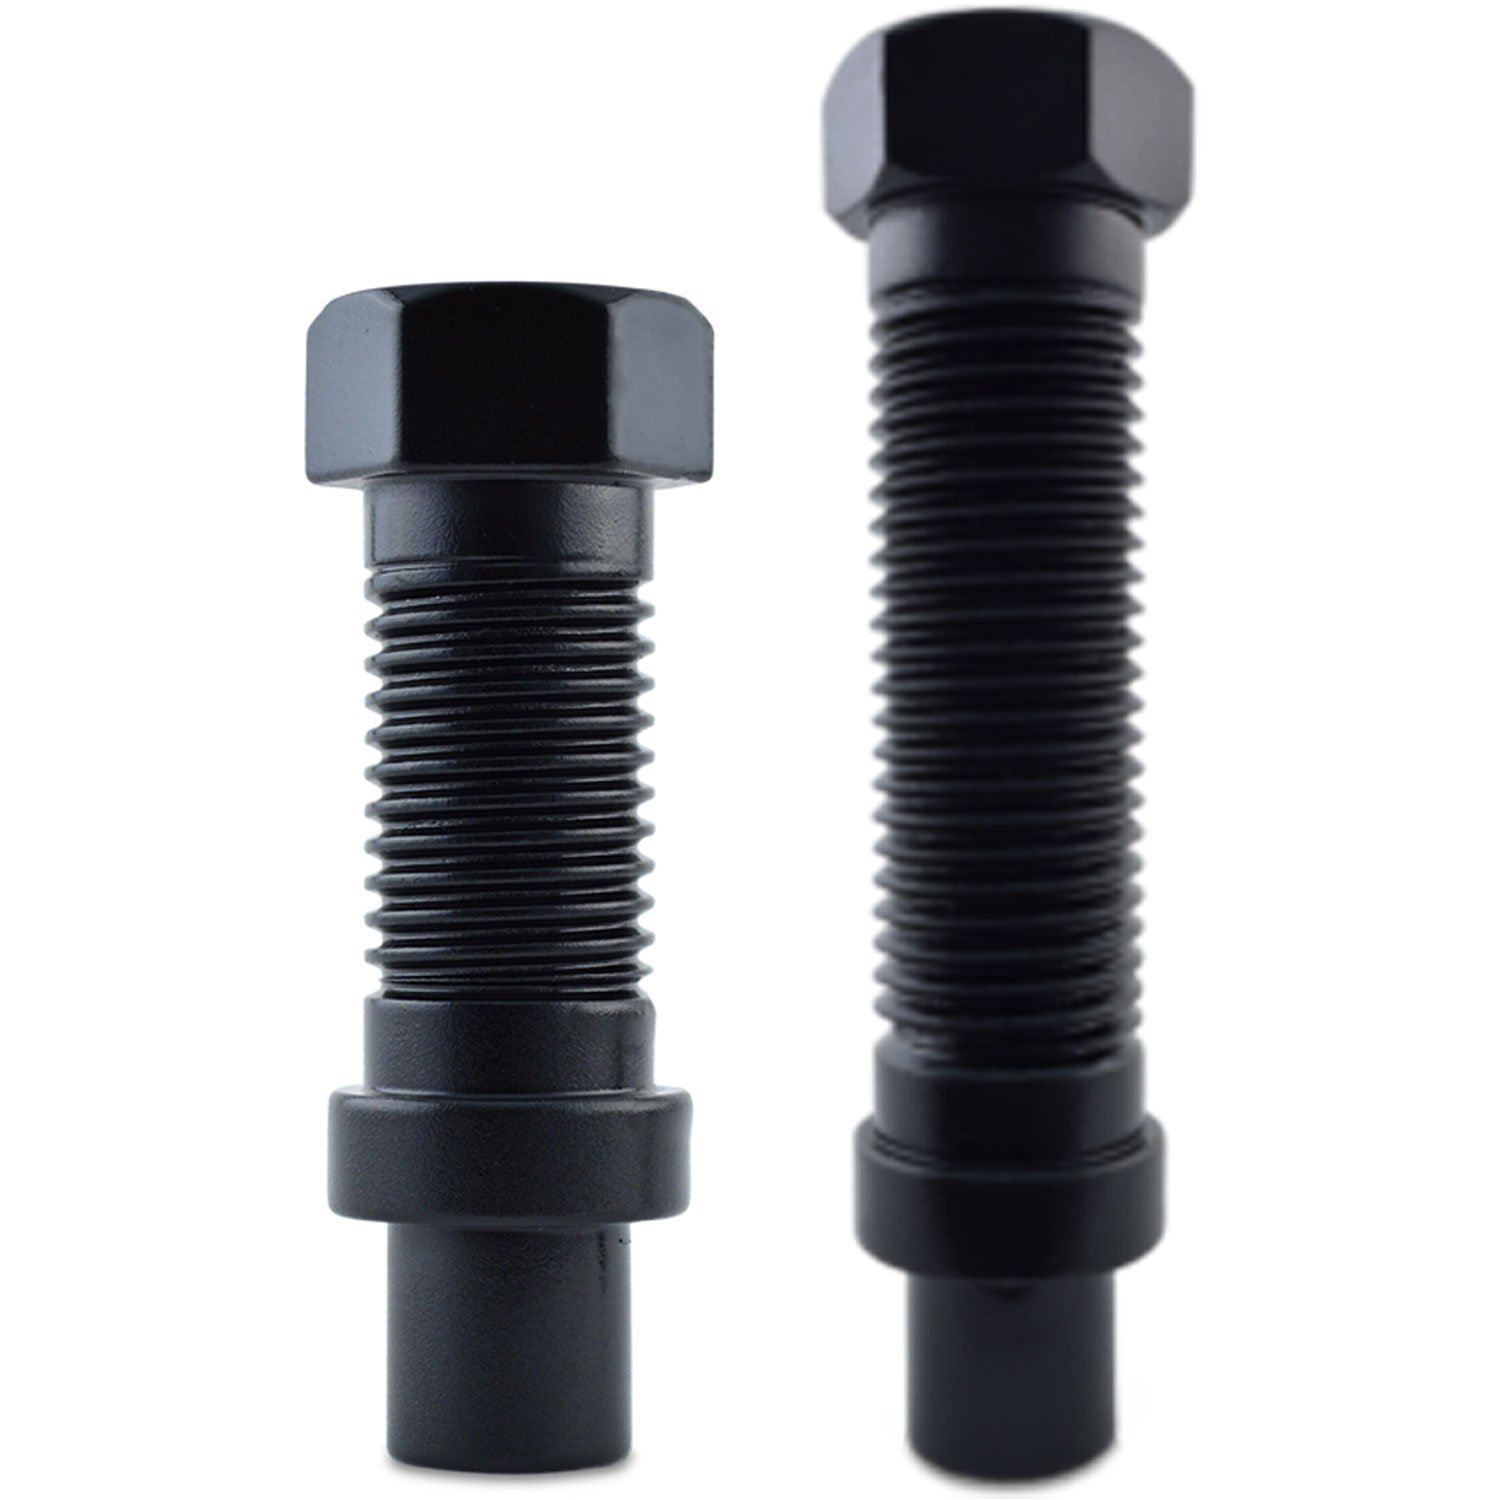 8-Lug Dually Bolt Style Lug Nut Kit Thread: 14mm x 1.5